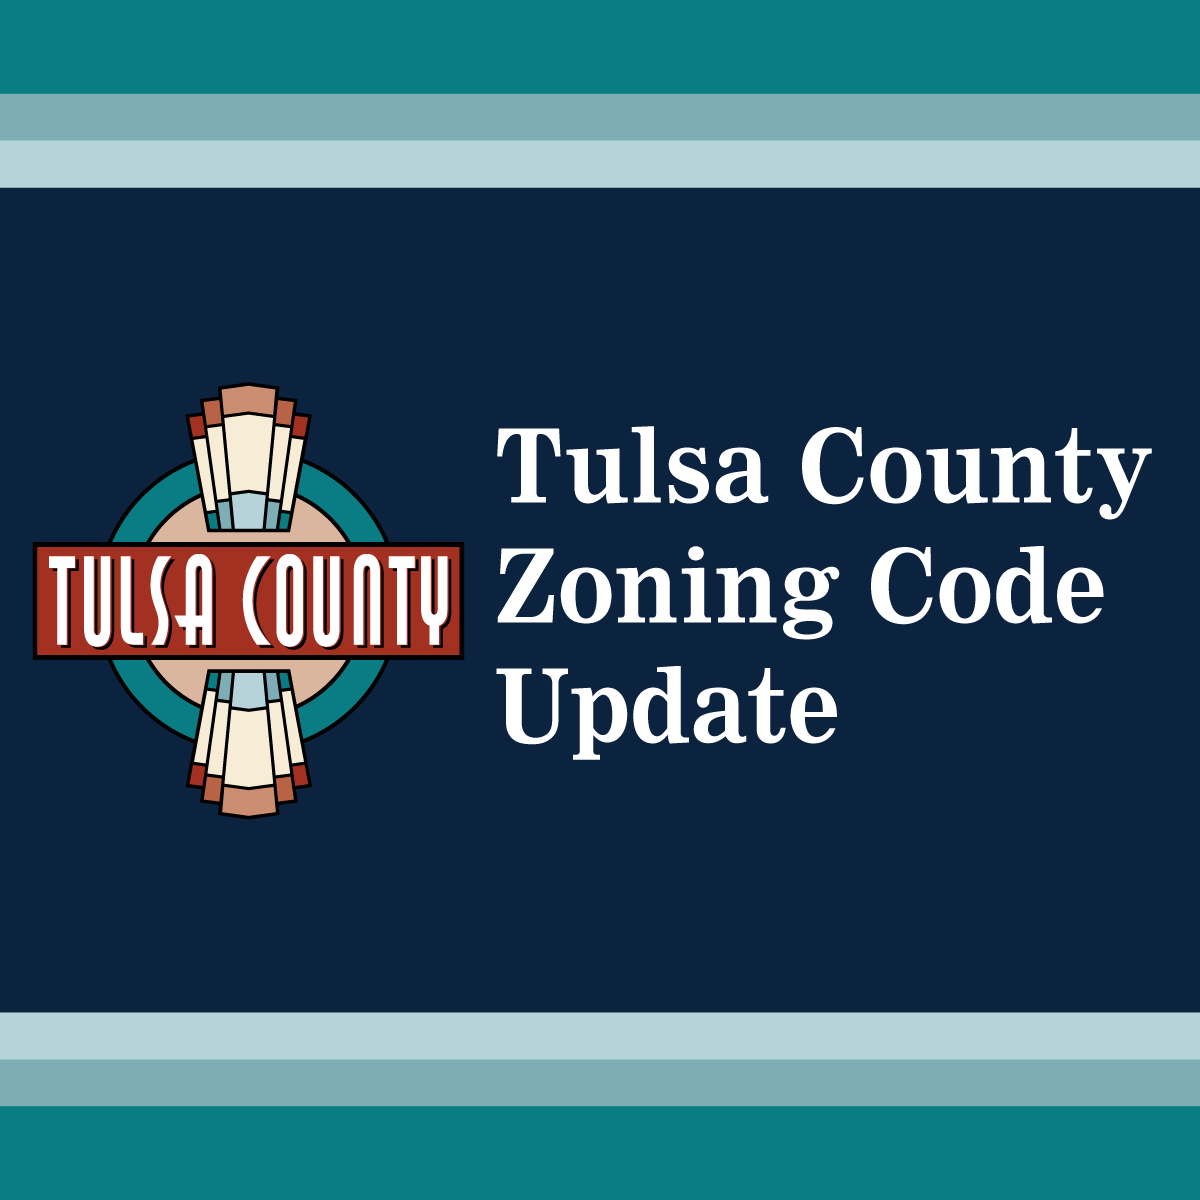 Tulsa County Zoning Code Update